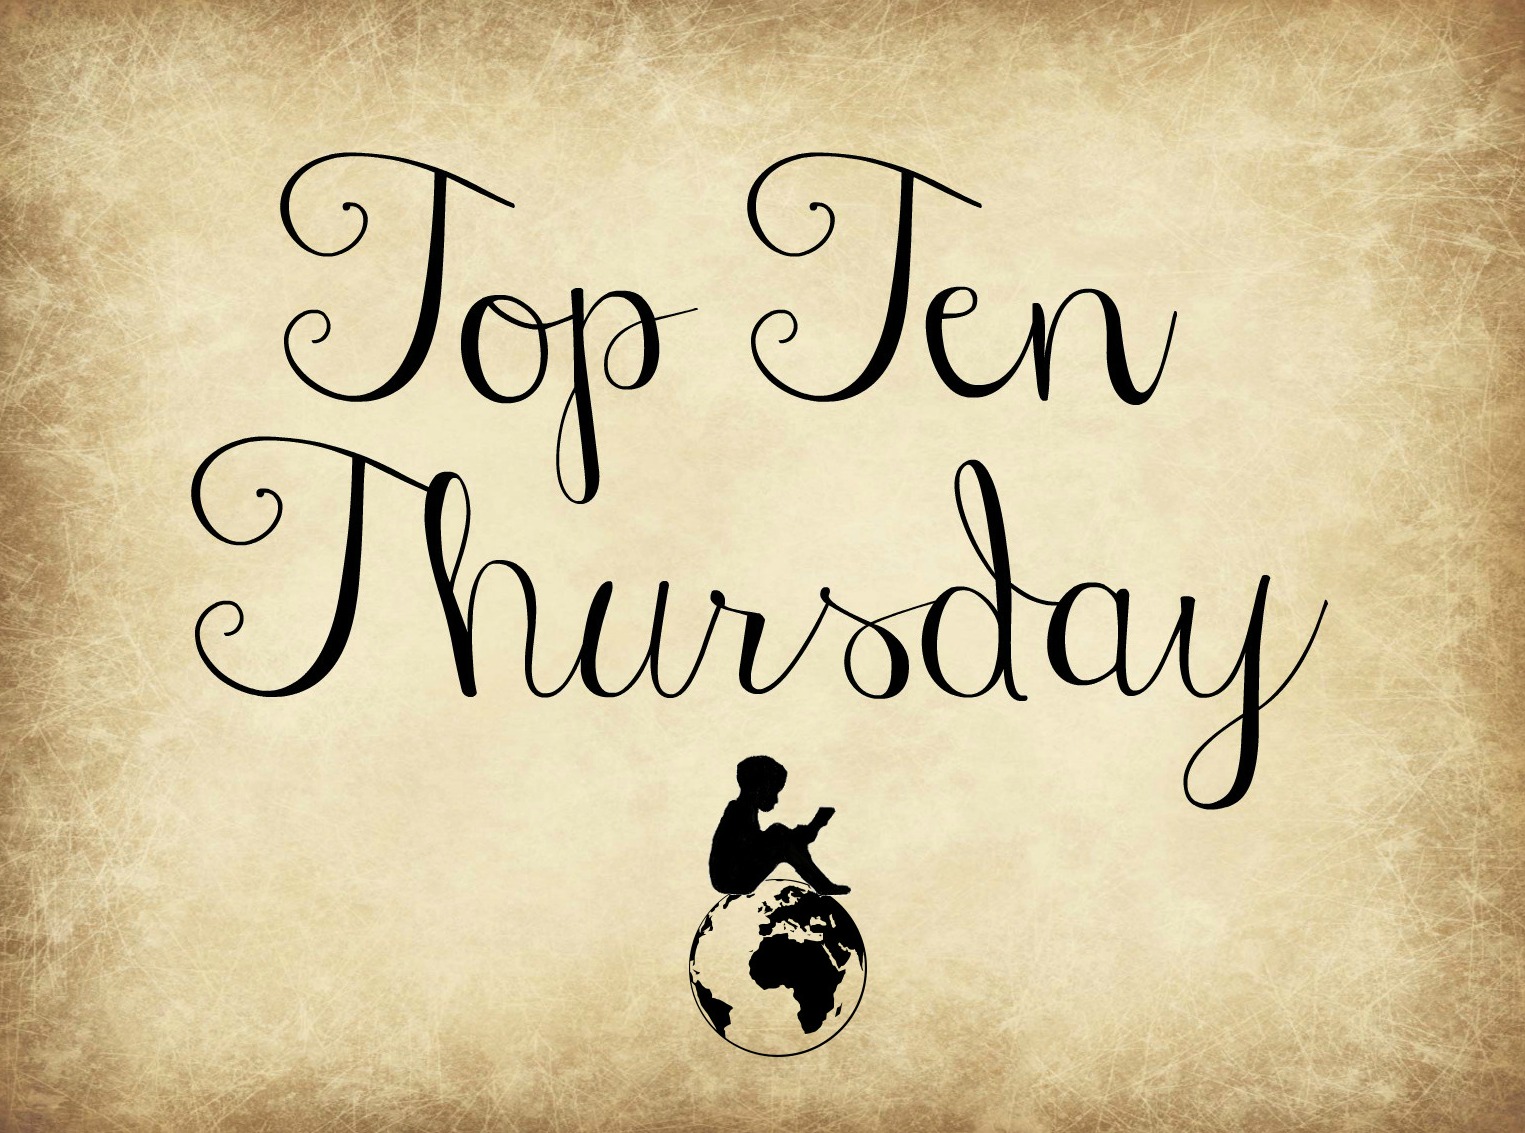 Top Ten Thursday: 10 Buchtipps von deutschsprachigen Autoren